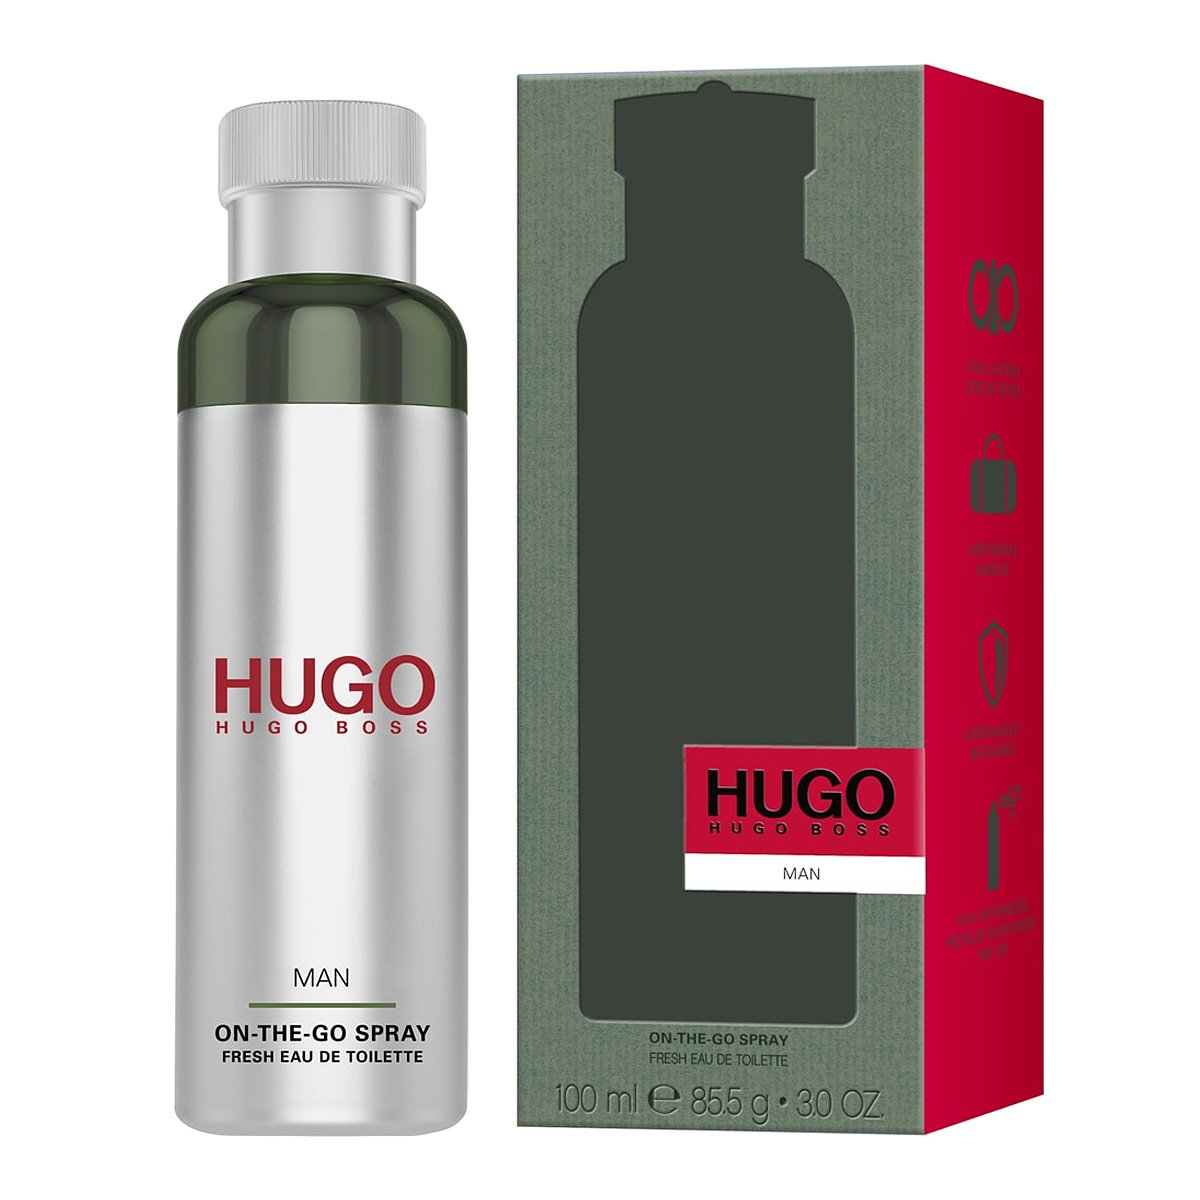 Hugo на русском. Hugo Boss Hugo men 100 мл. Тестер Hugo Boss Hugo men. Hugo Boss on the go Spray 100ml. Hugo Boss man мужские духи.